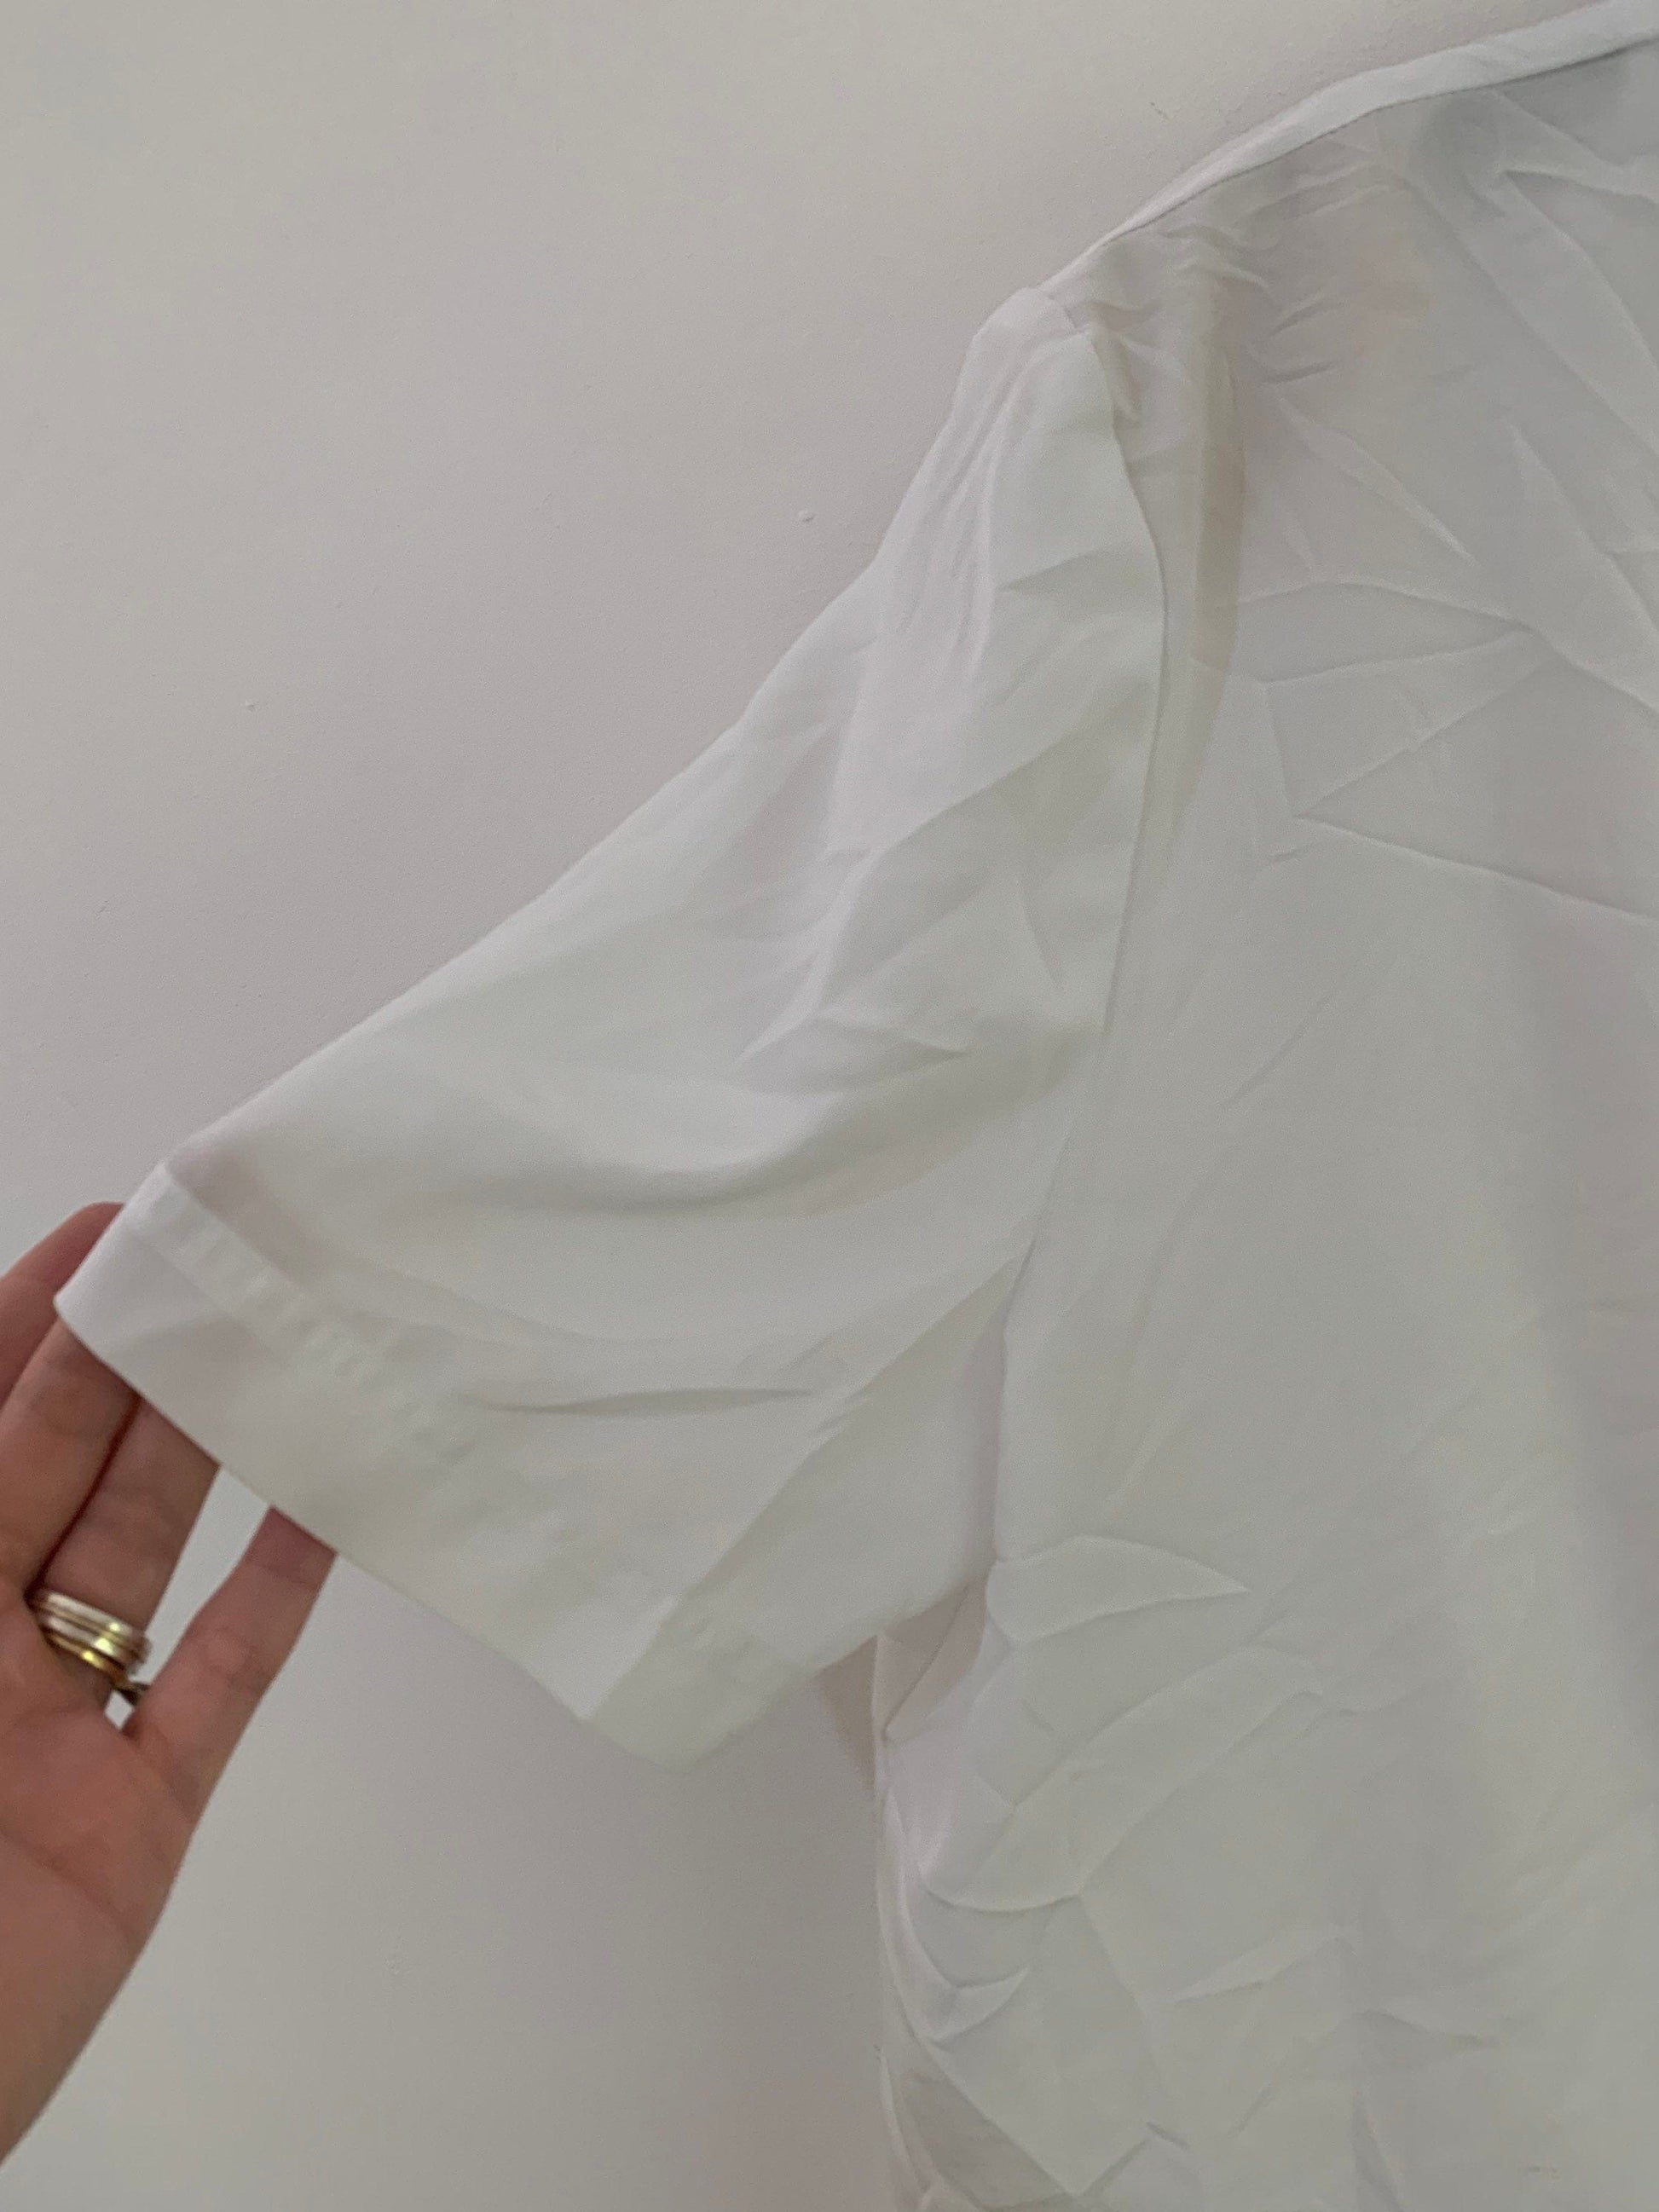 White Vintage Blouse Semi Sheer Button Through Boxy Shirt Sleeves - Size 14